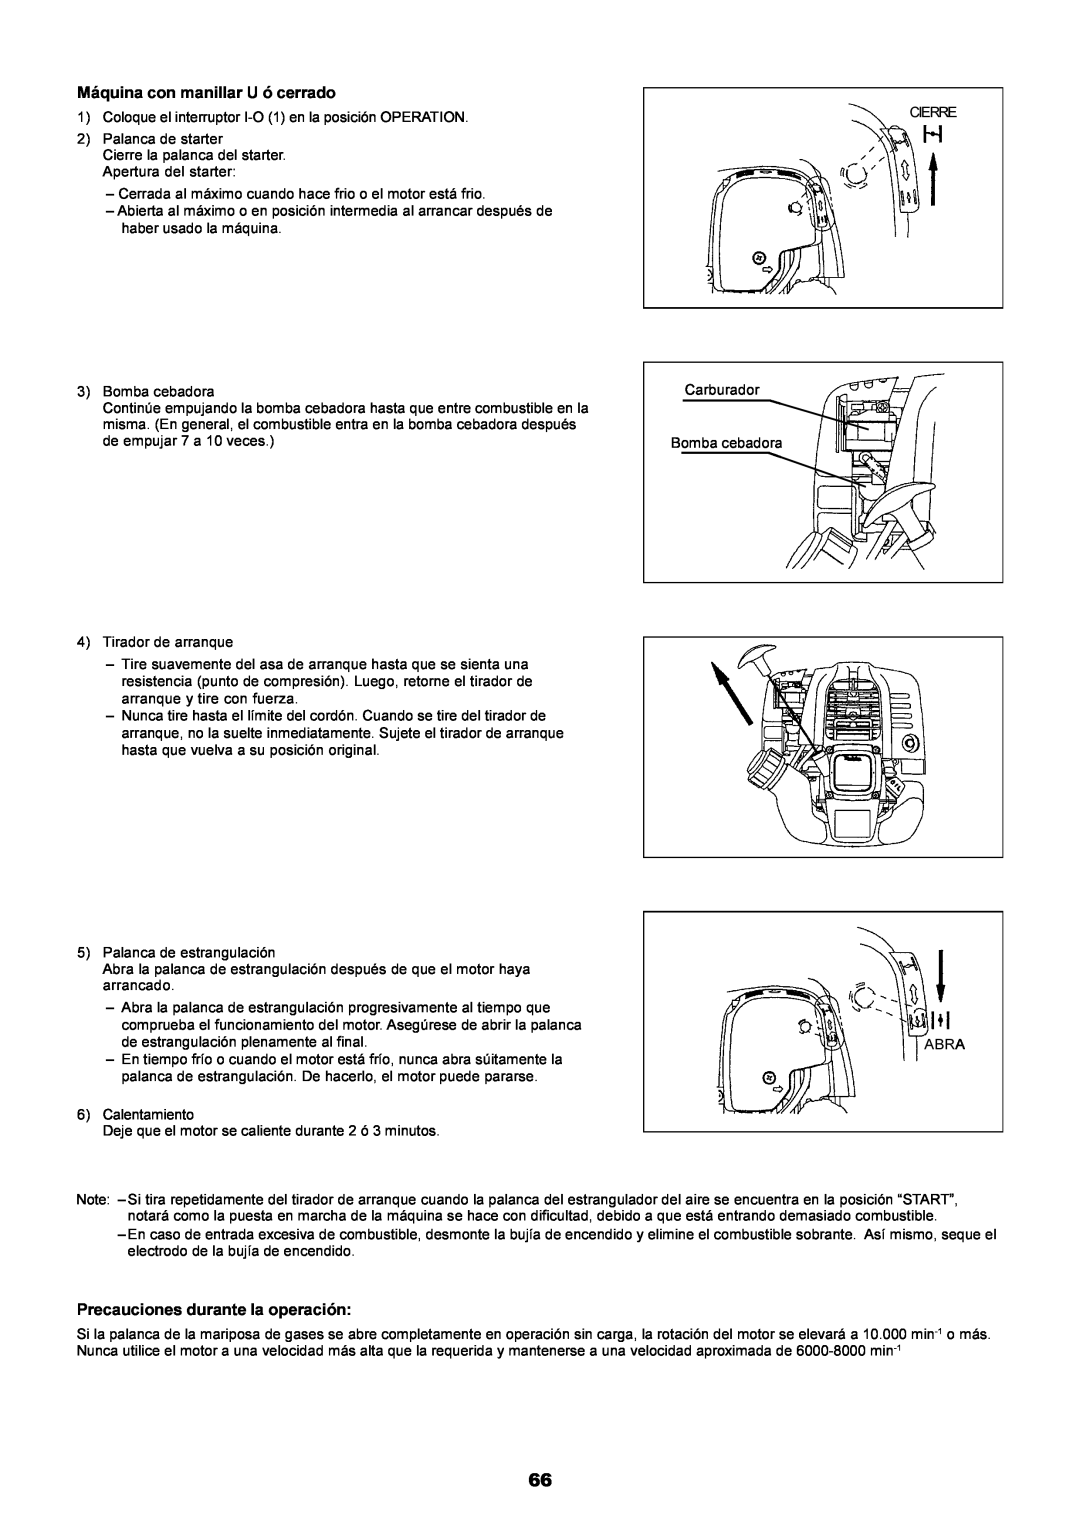 Dolmar MS-251.4, MS-250.4 instruction manual Máquina con manillar U ó cerrado, Precauciones durante la operación 